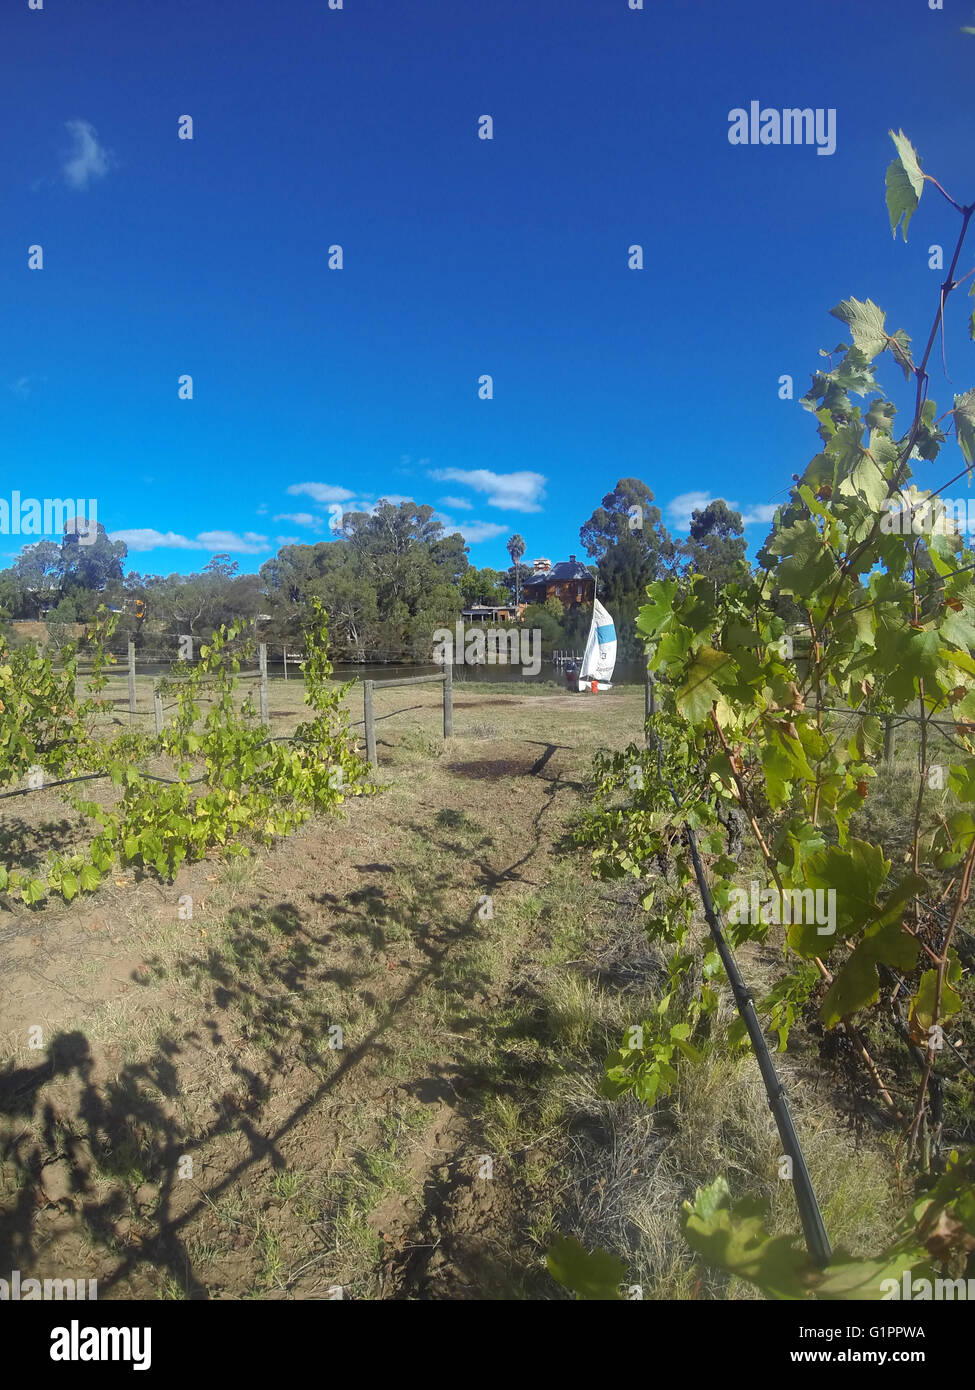 Segeln Jolle unter herbstlichen Weinreben, Flussufer Weingut, Swan Valley, Swan River, Perth, Western Australia. Weder Herr PR Stockfoto